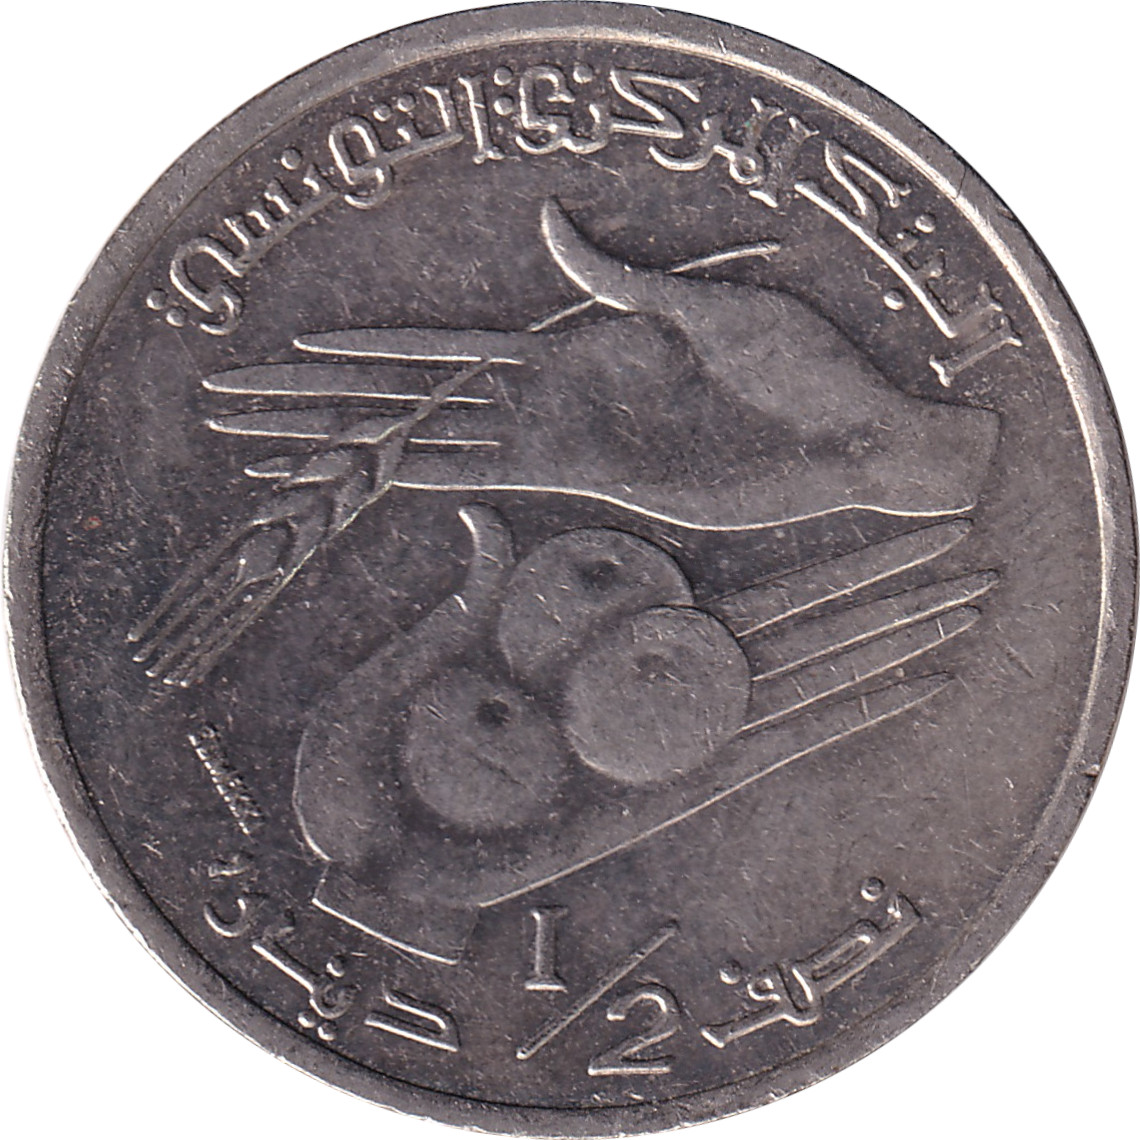 1/2 dinar - FAO - Blason